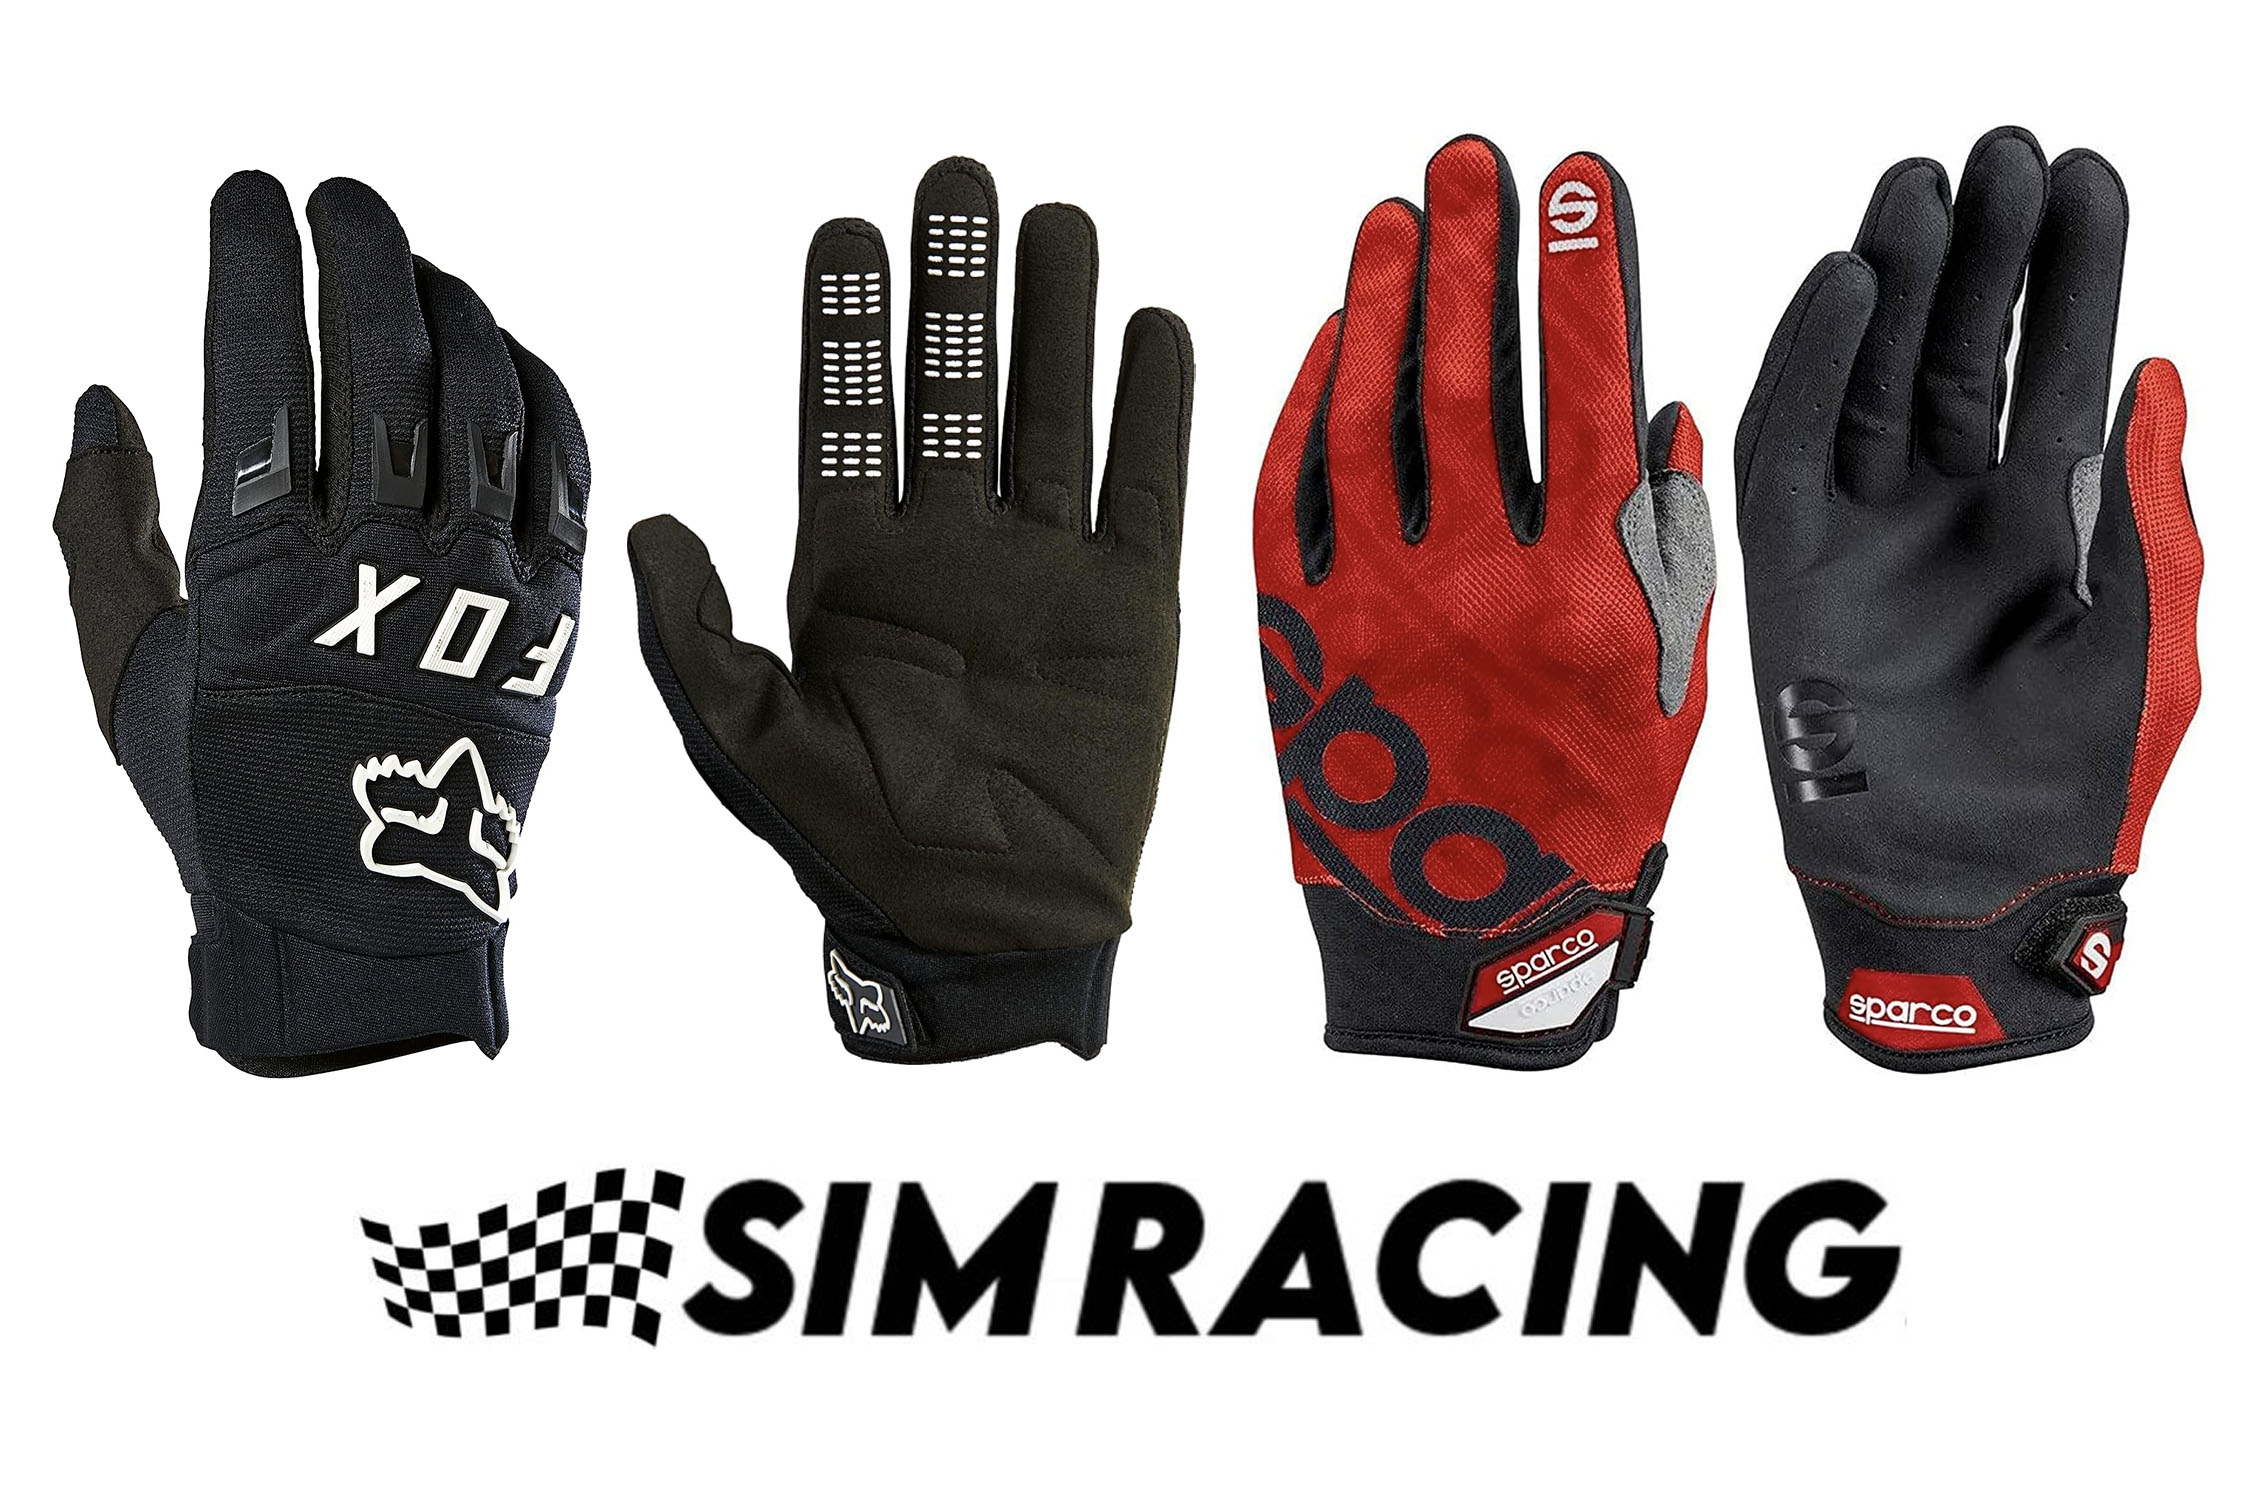 Des gants pas virtuels pour Fast Track Sim - Simrace-Blog